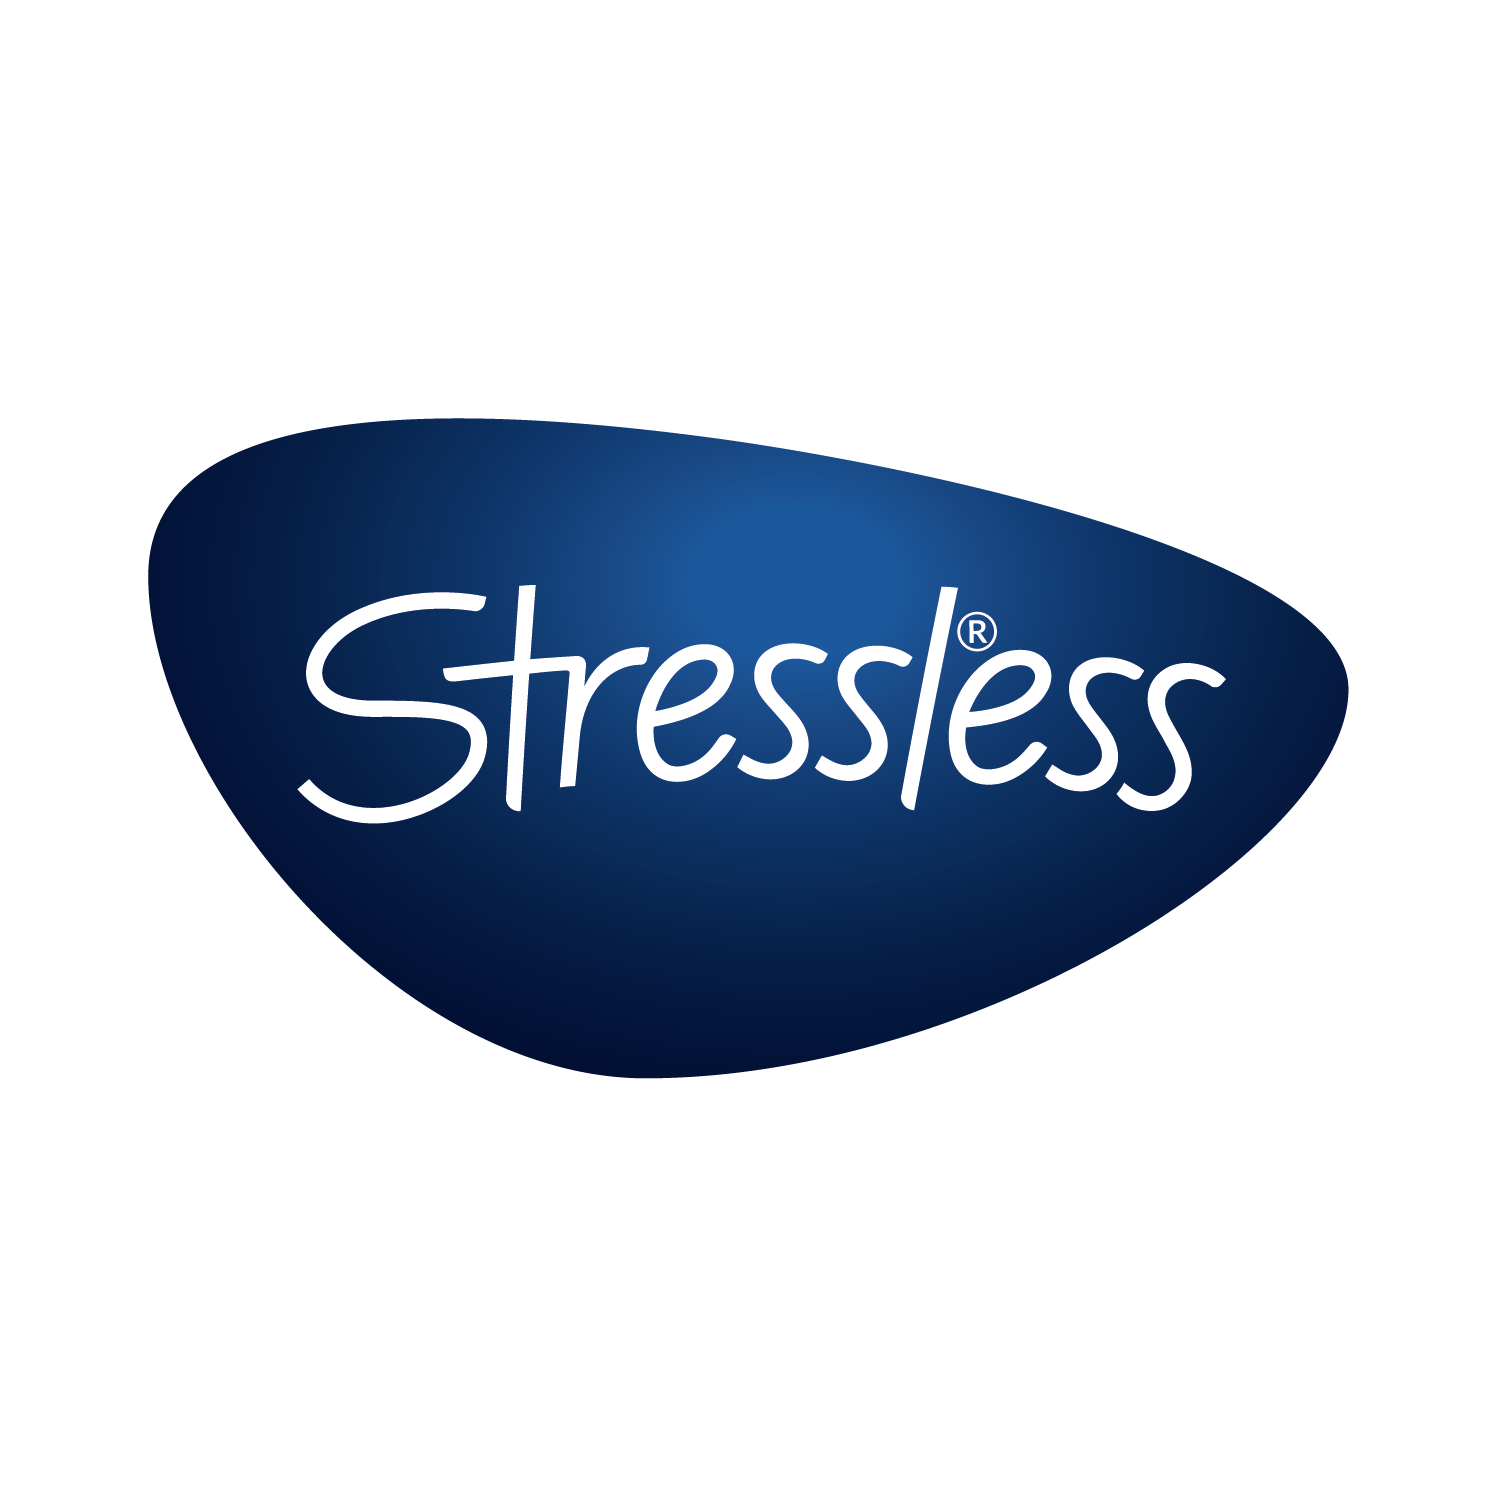 Stressless-logo-01